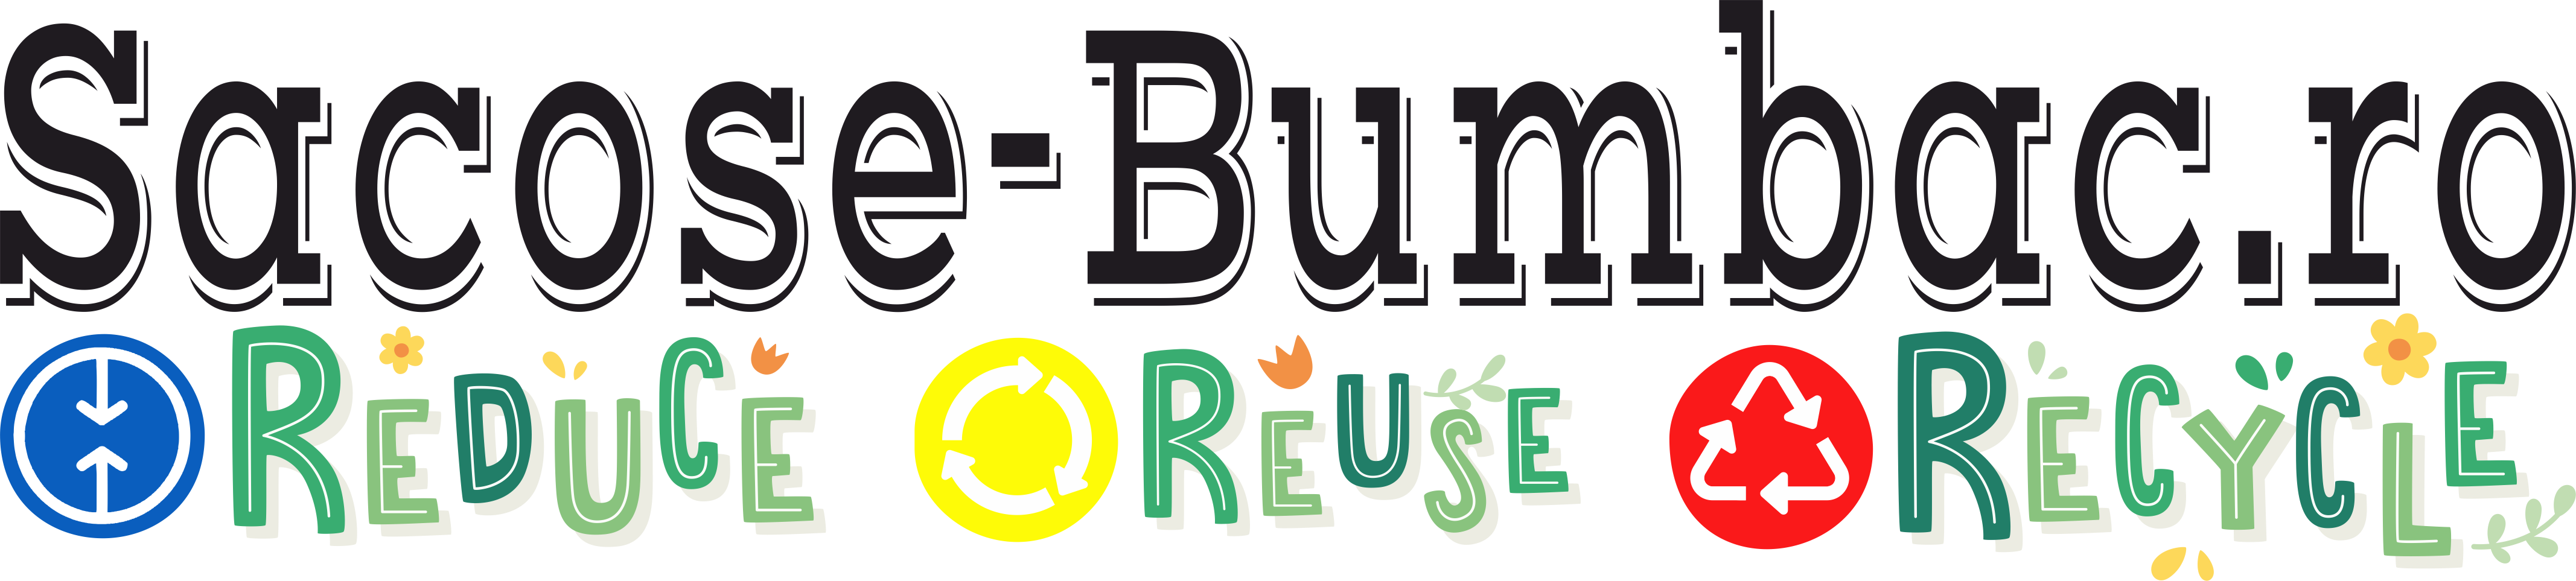 Sacose-Bumbac-Logo-NOU-REDUCE-REUSE-RECYCLE